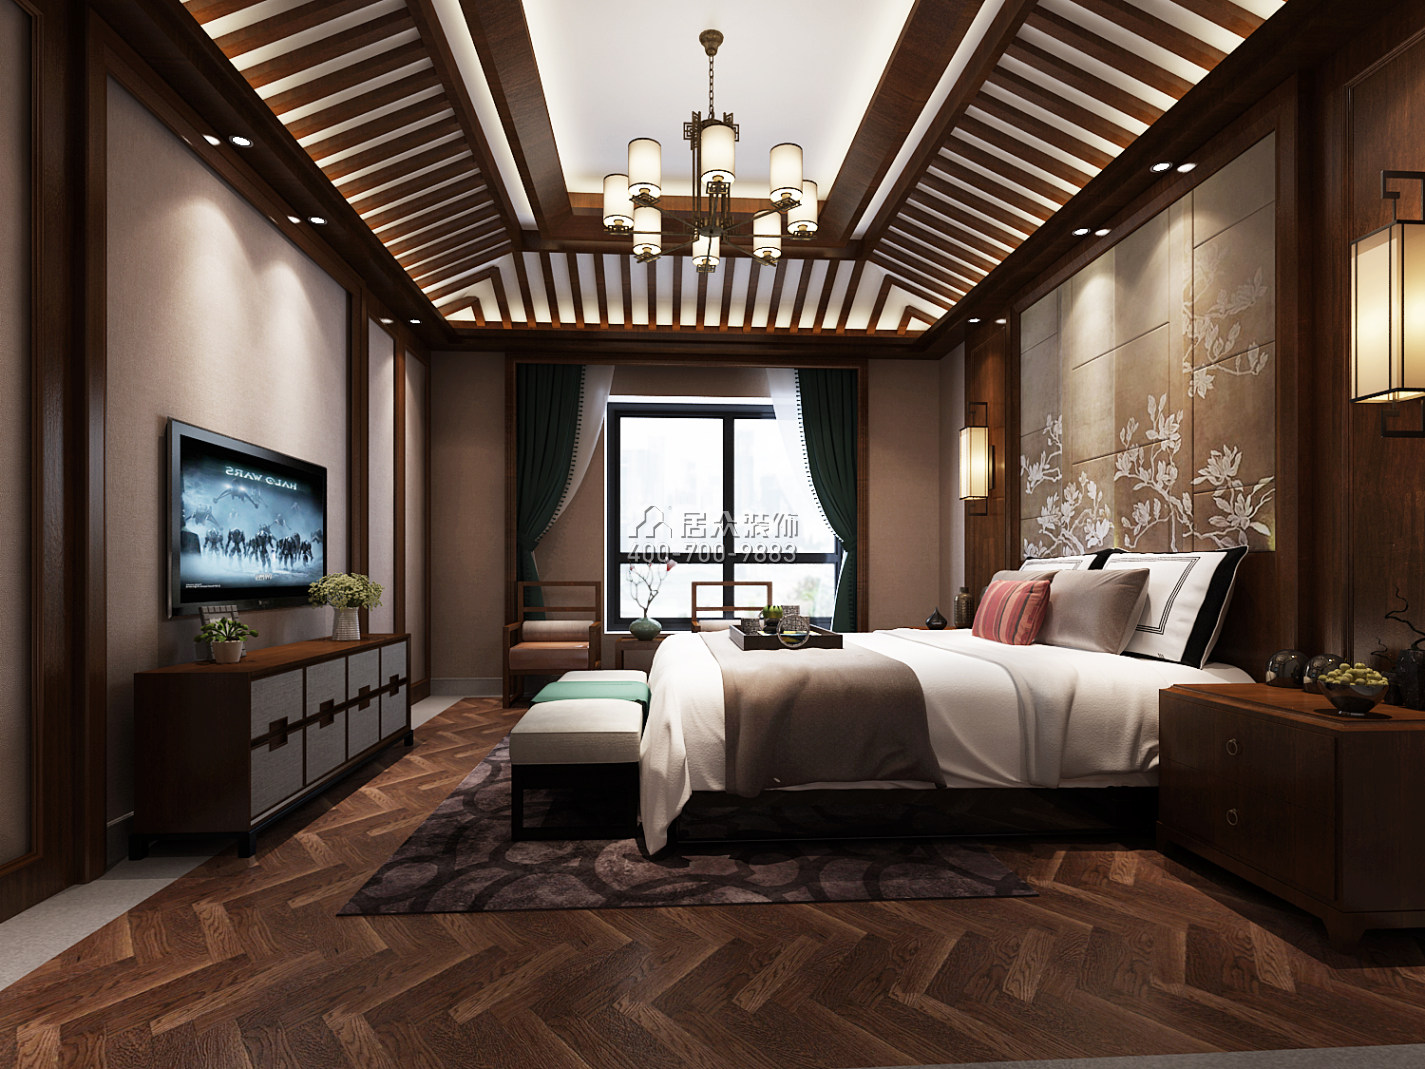 天利天鹅湾350平方米中式风格别墅户型卧室装修效果图